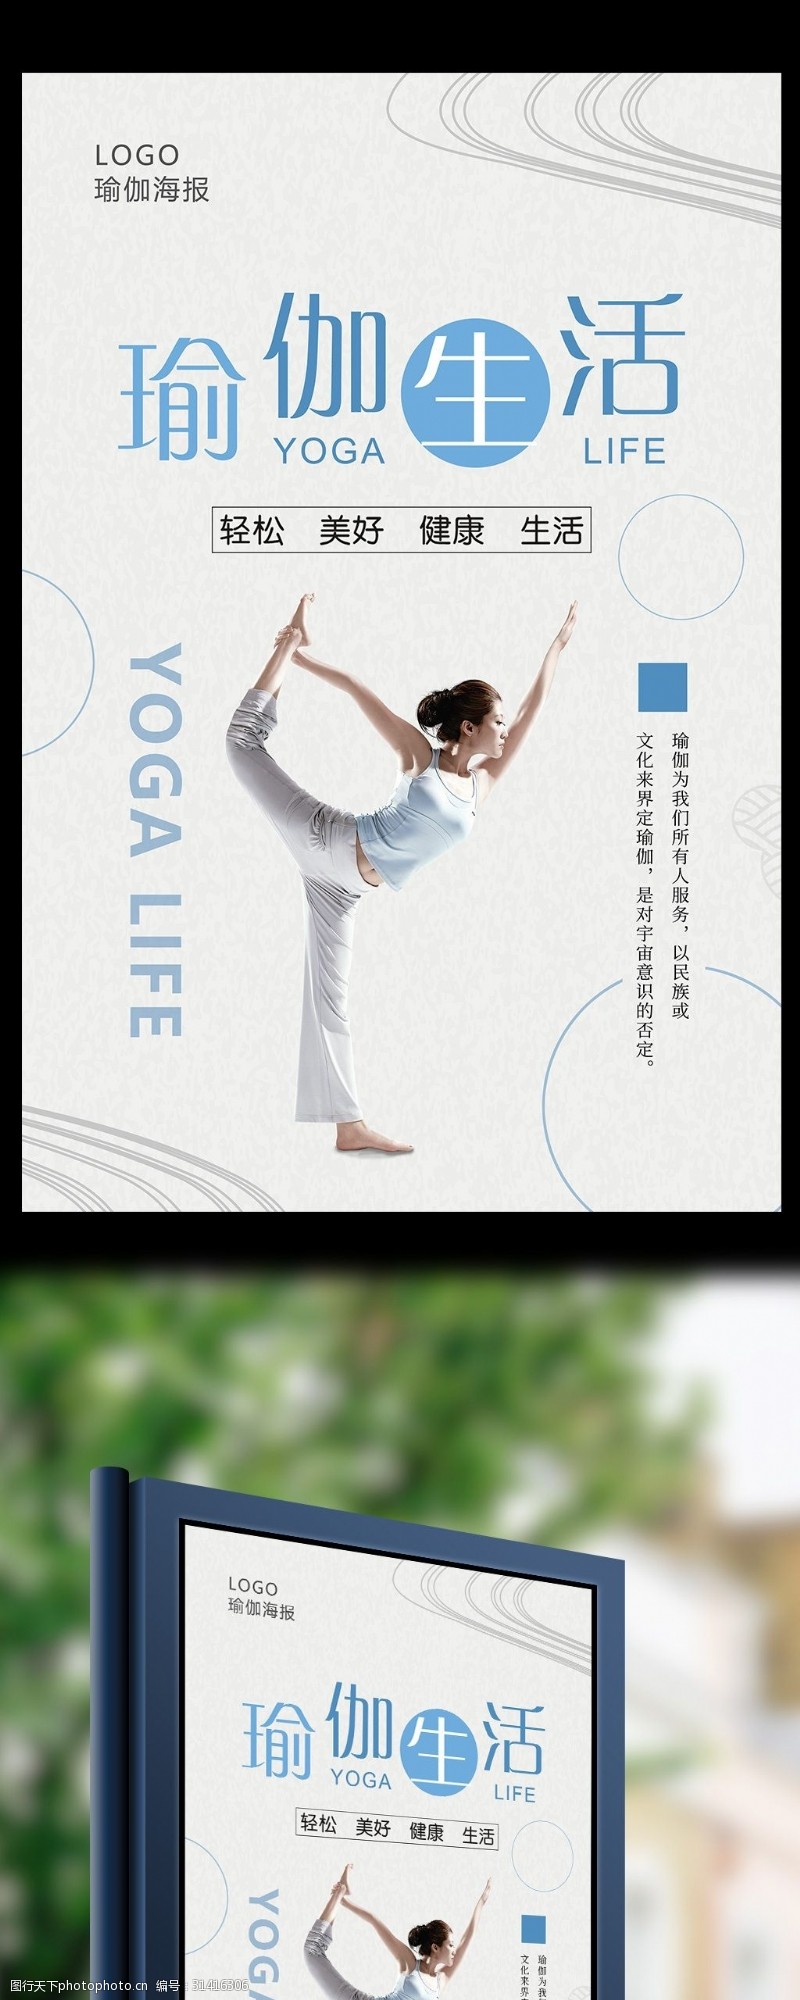 瑜伽中心小清新瑜伽生活海报设计